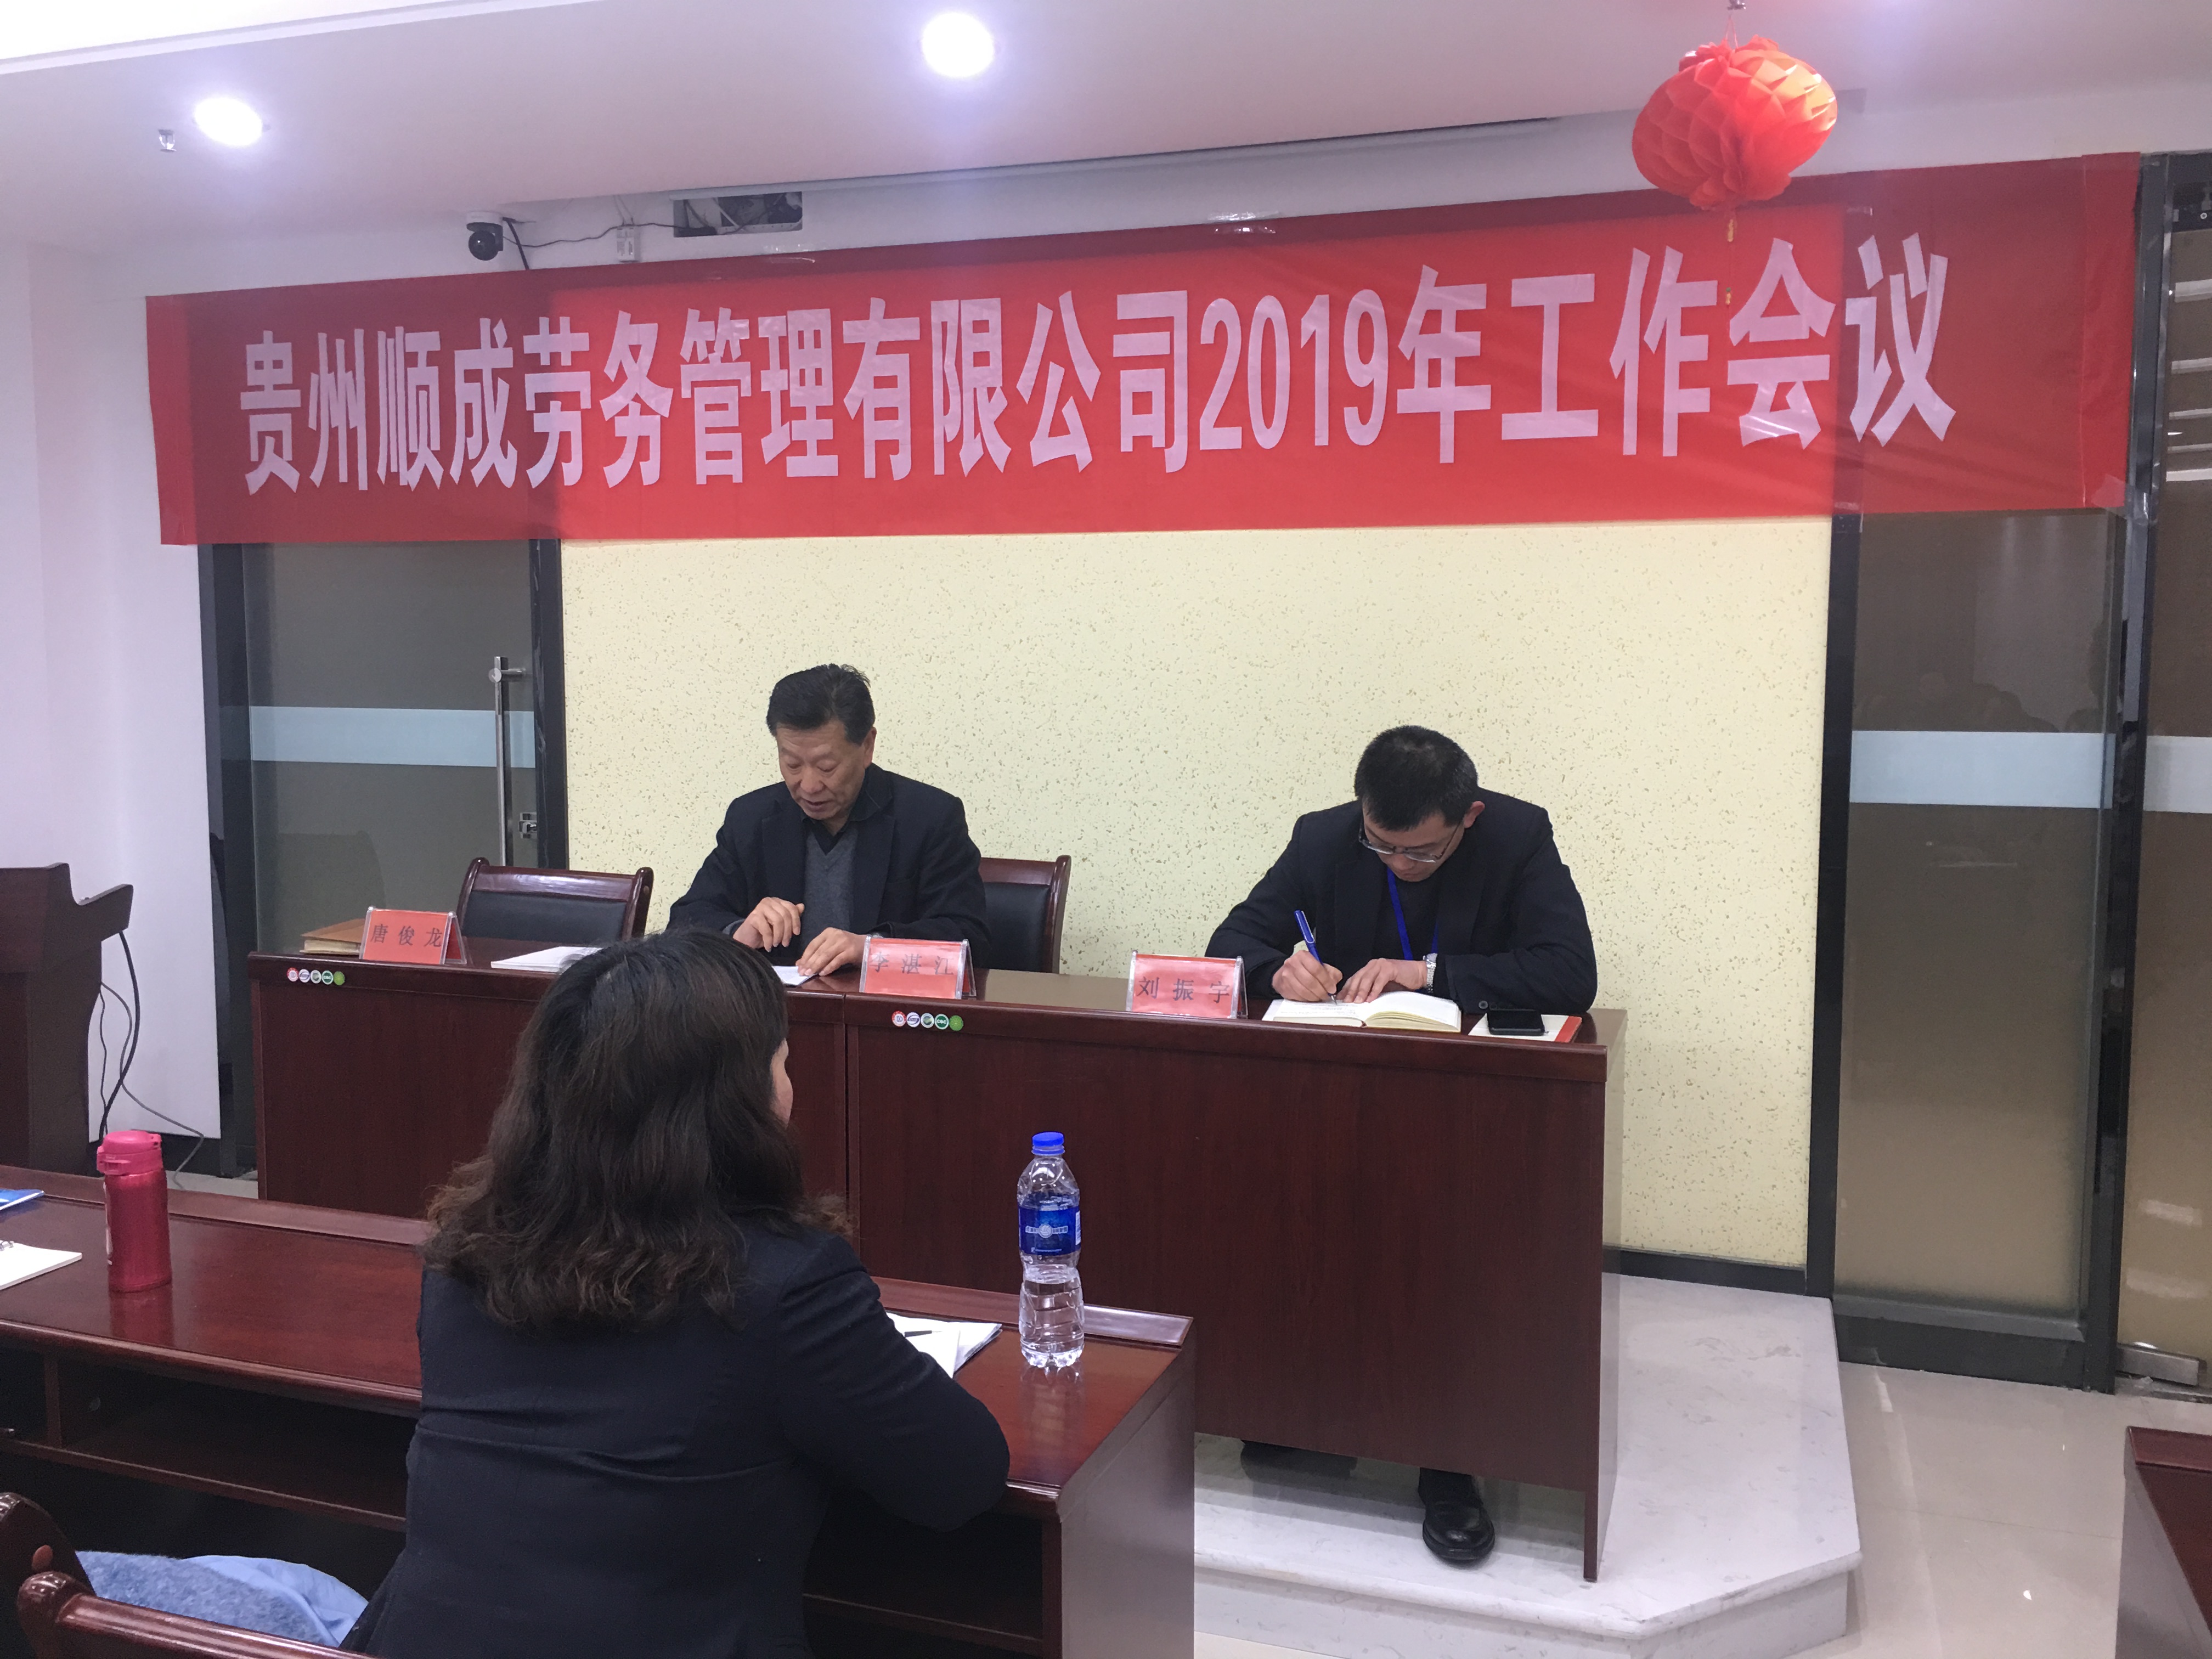 贵州顺成劳务管理-vnsc3威尼斯城官网有限公司2019工作会议